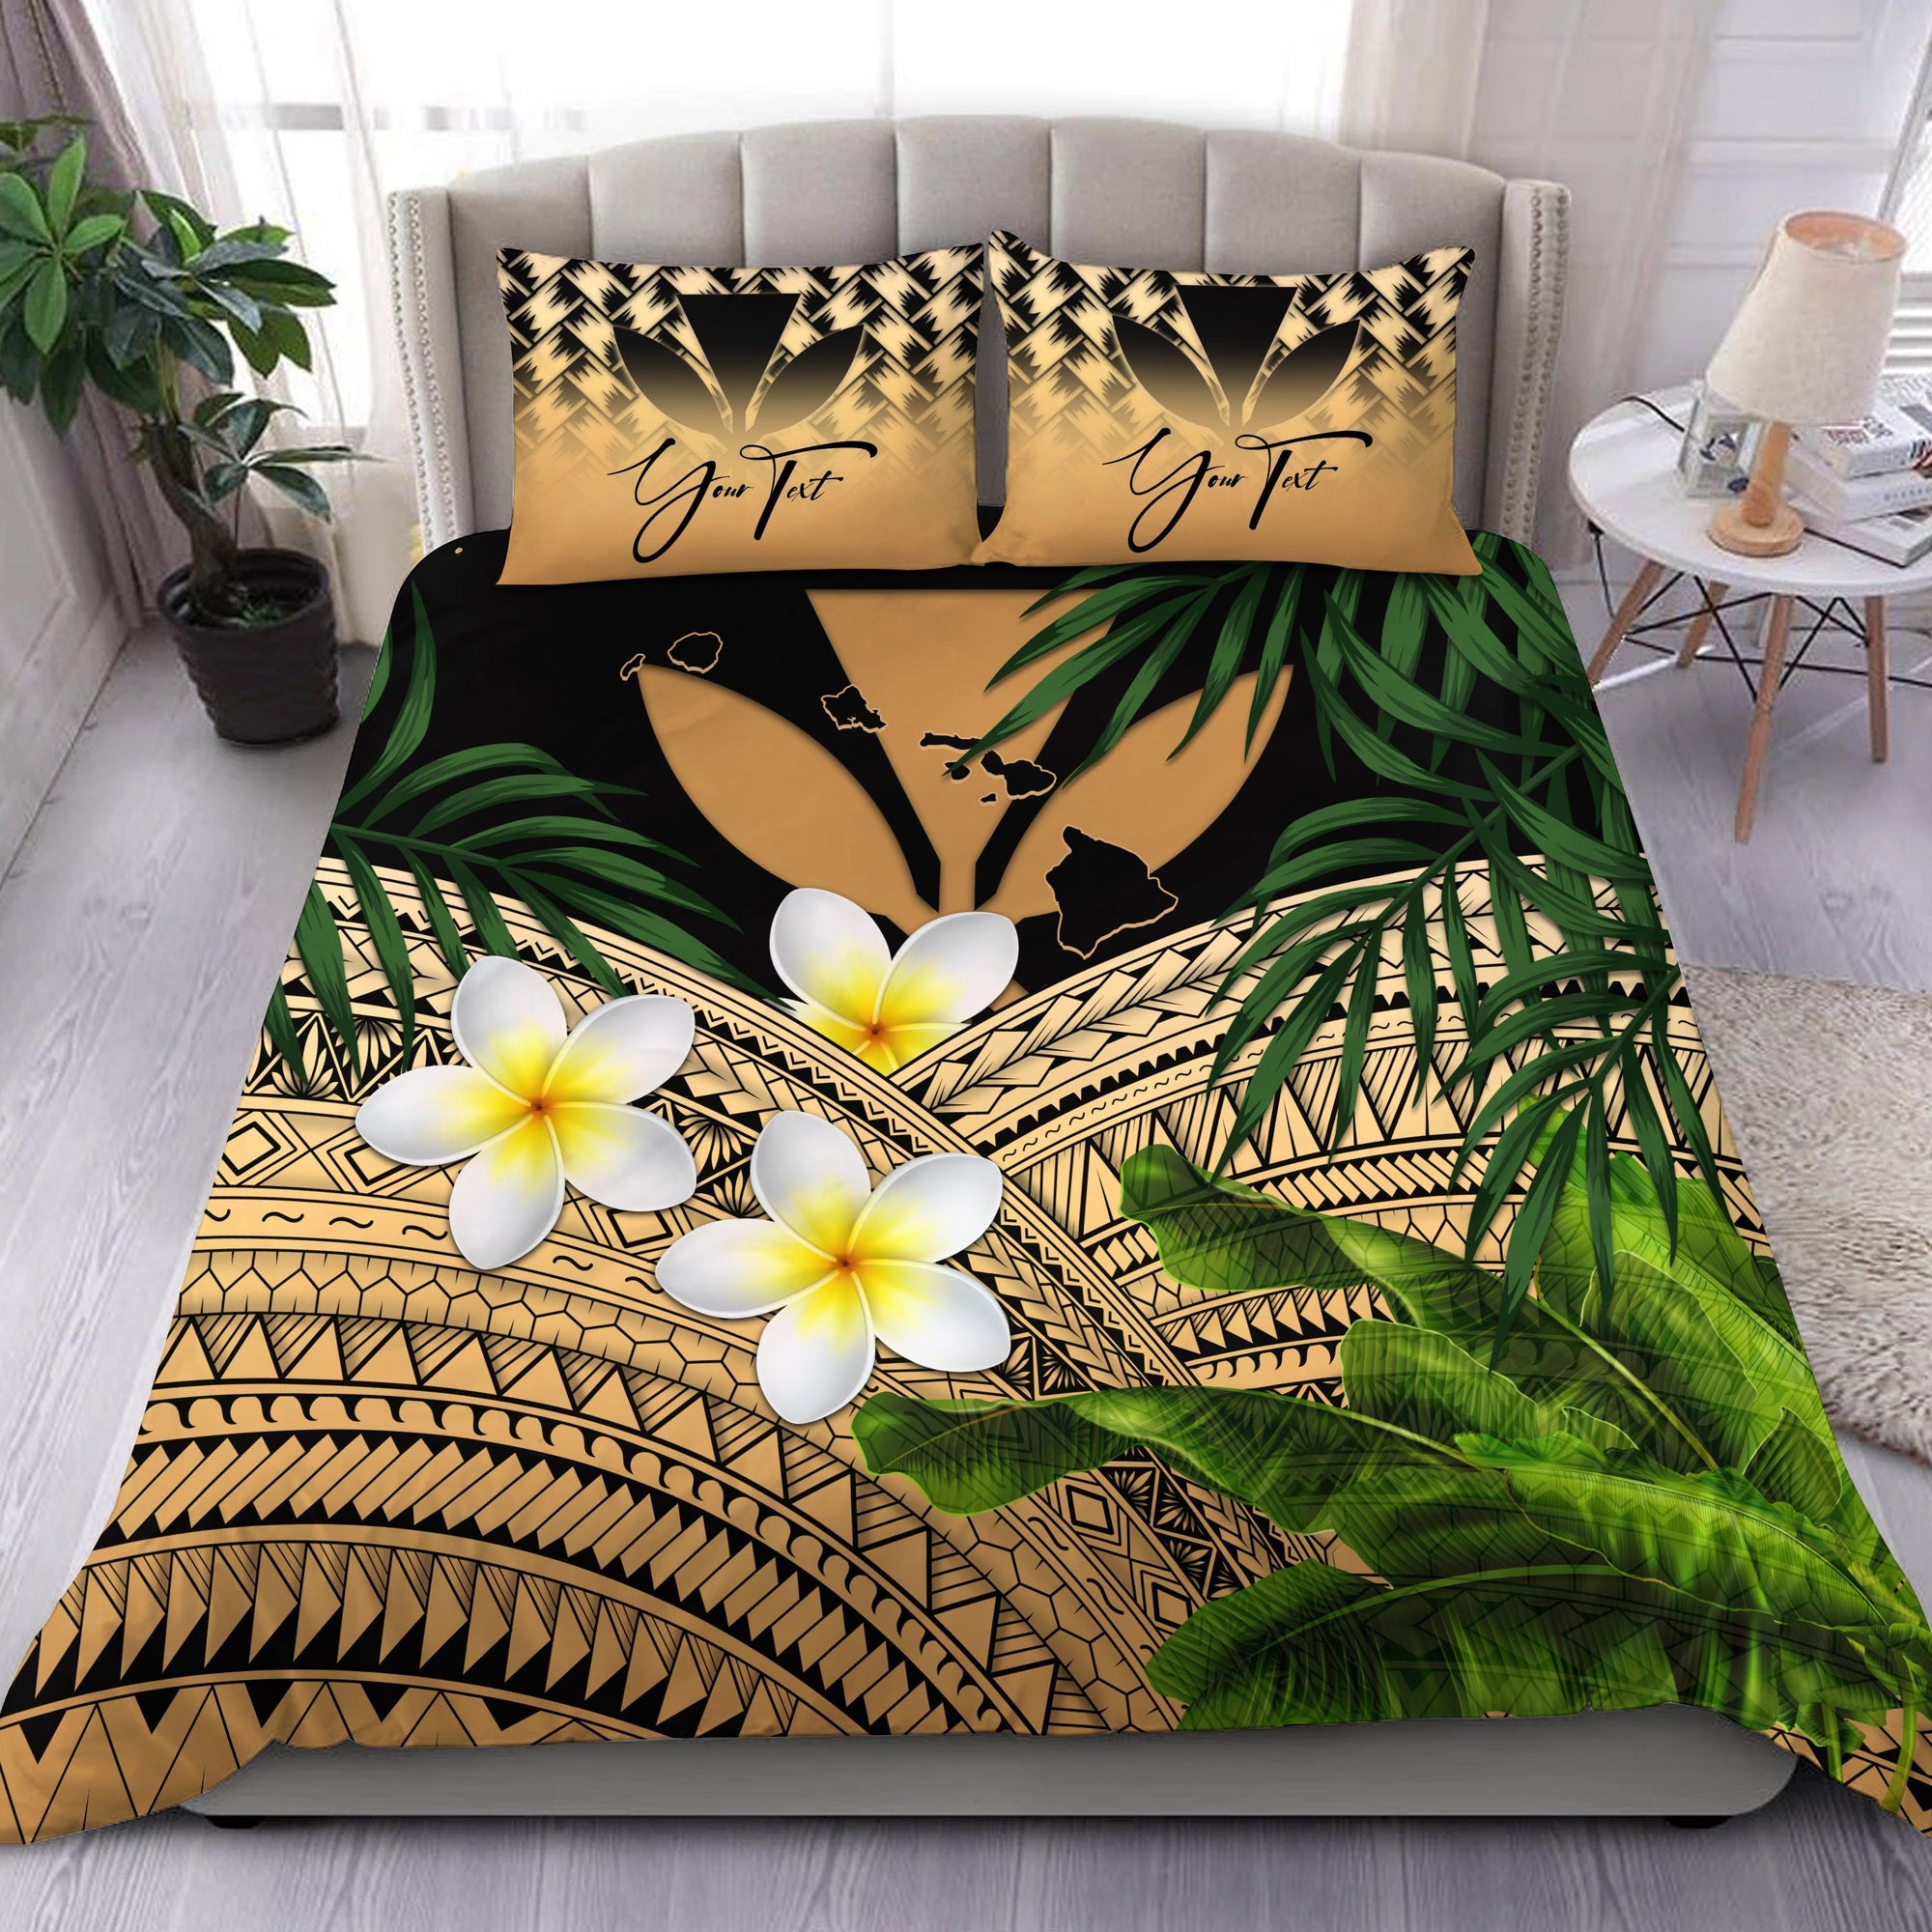 custom-kanaka-maoli-hawaiian-bedding-set-polynesian-plumeria-banana-leaves-gold-personal-signature